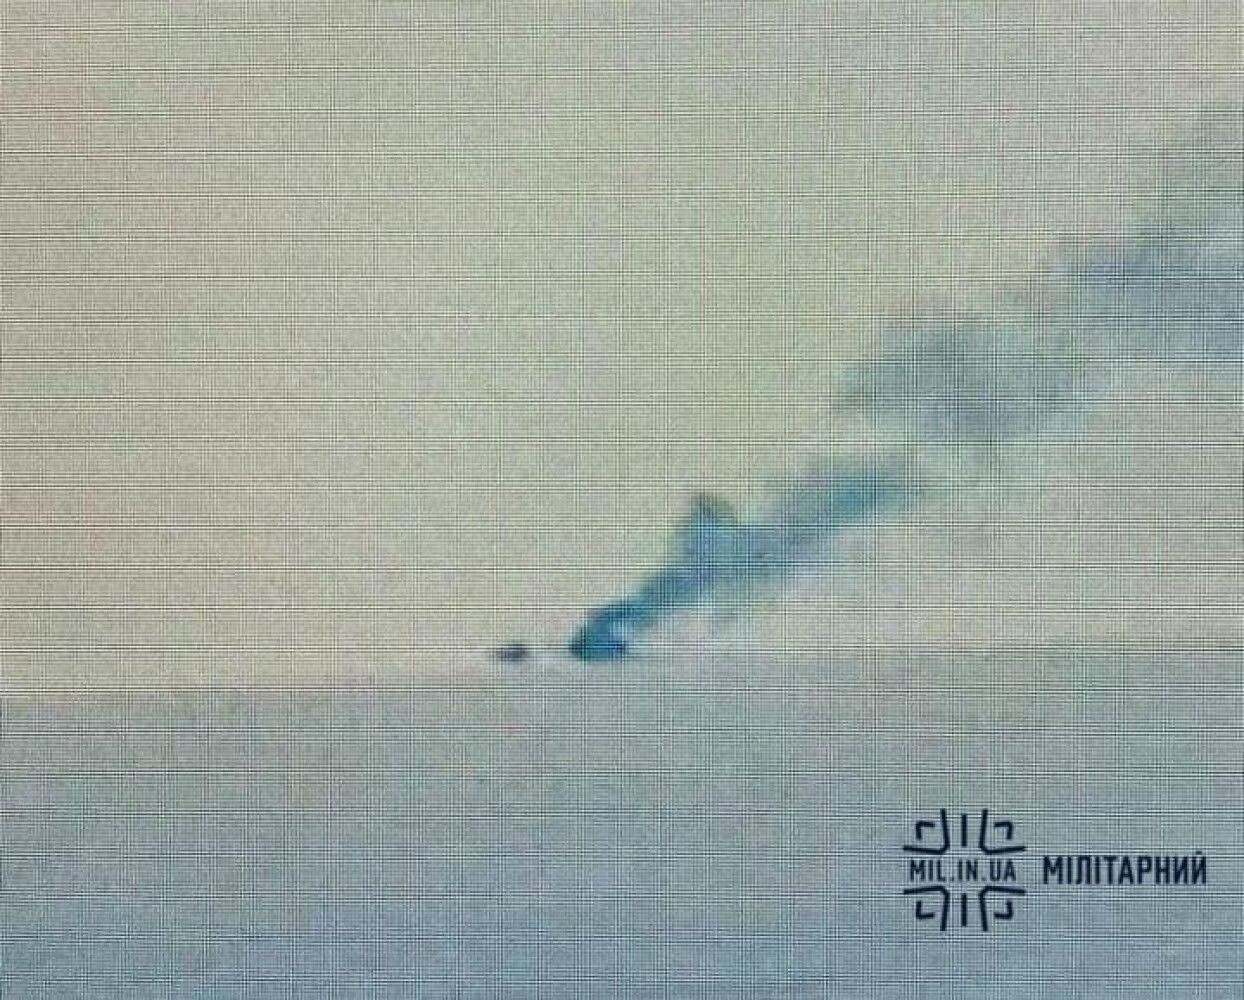 Был гордостью оккупантов: СМИ раскрыли подробности об уничтоженном корабле РФ